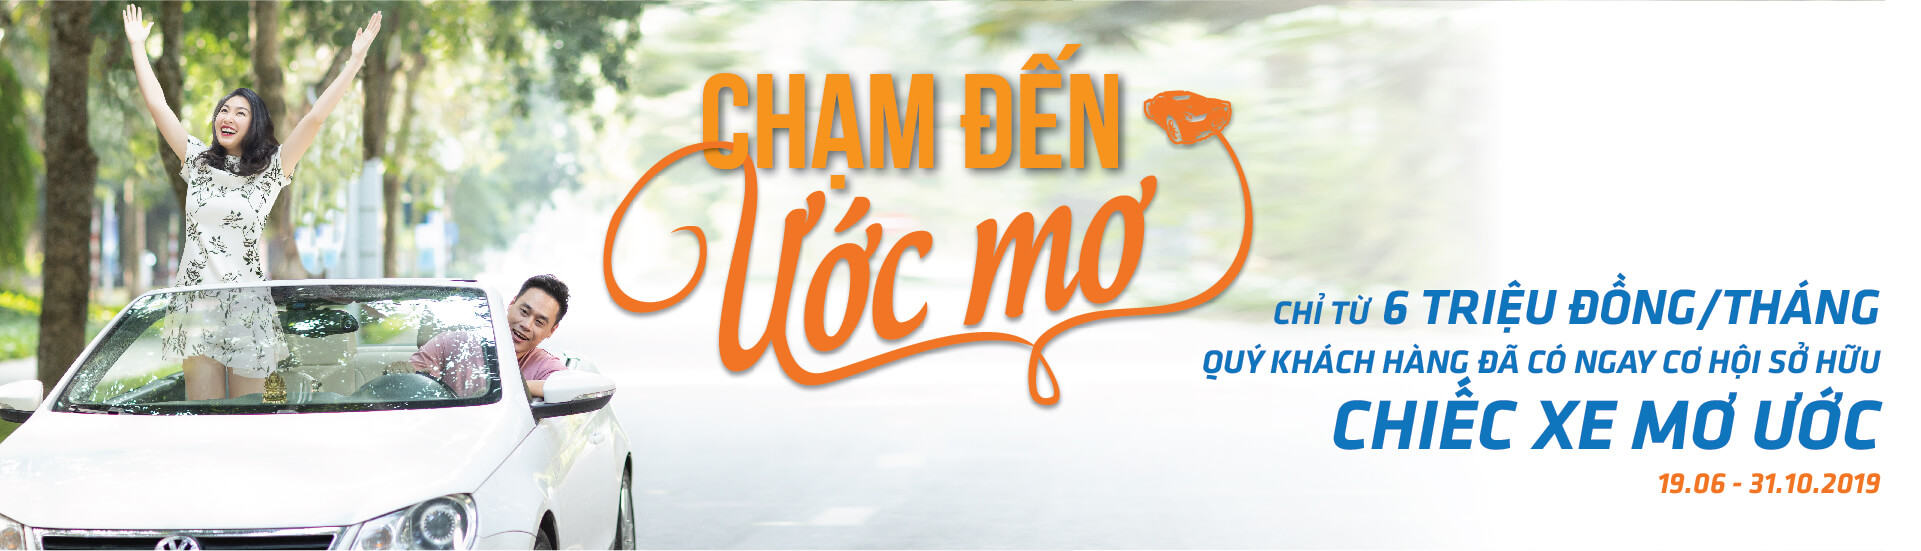 10-9-2020: Ra mắt eKYC – định danh khách hàng điện tử trên Ví Việt